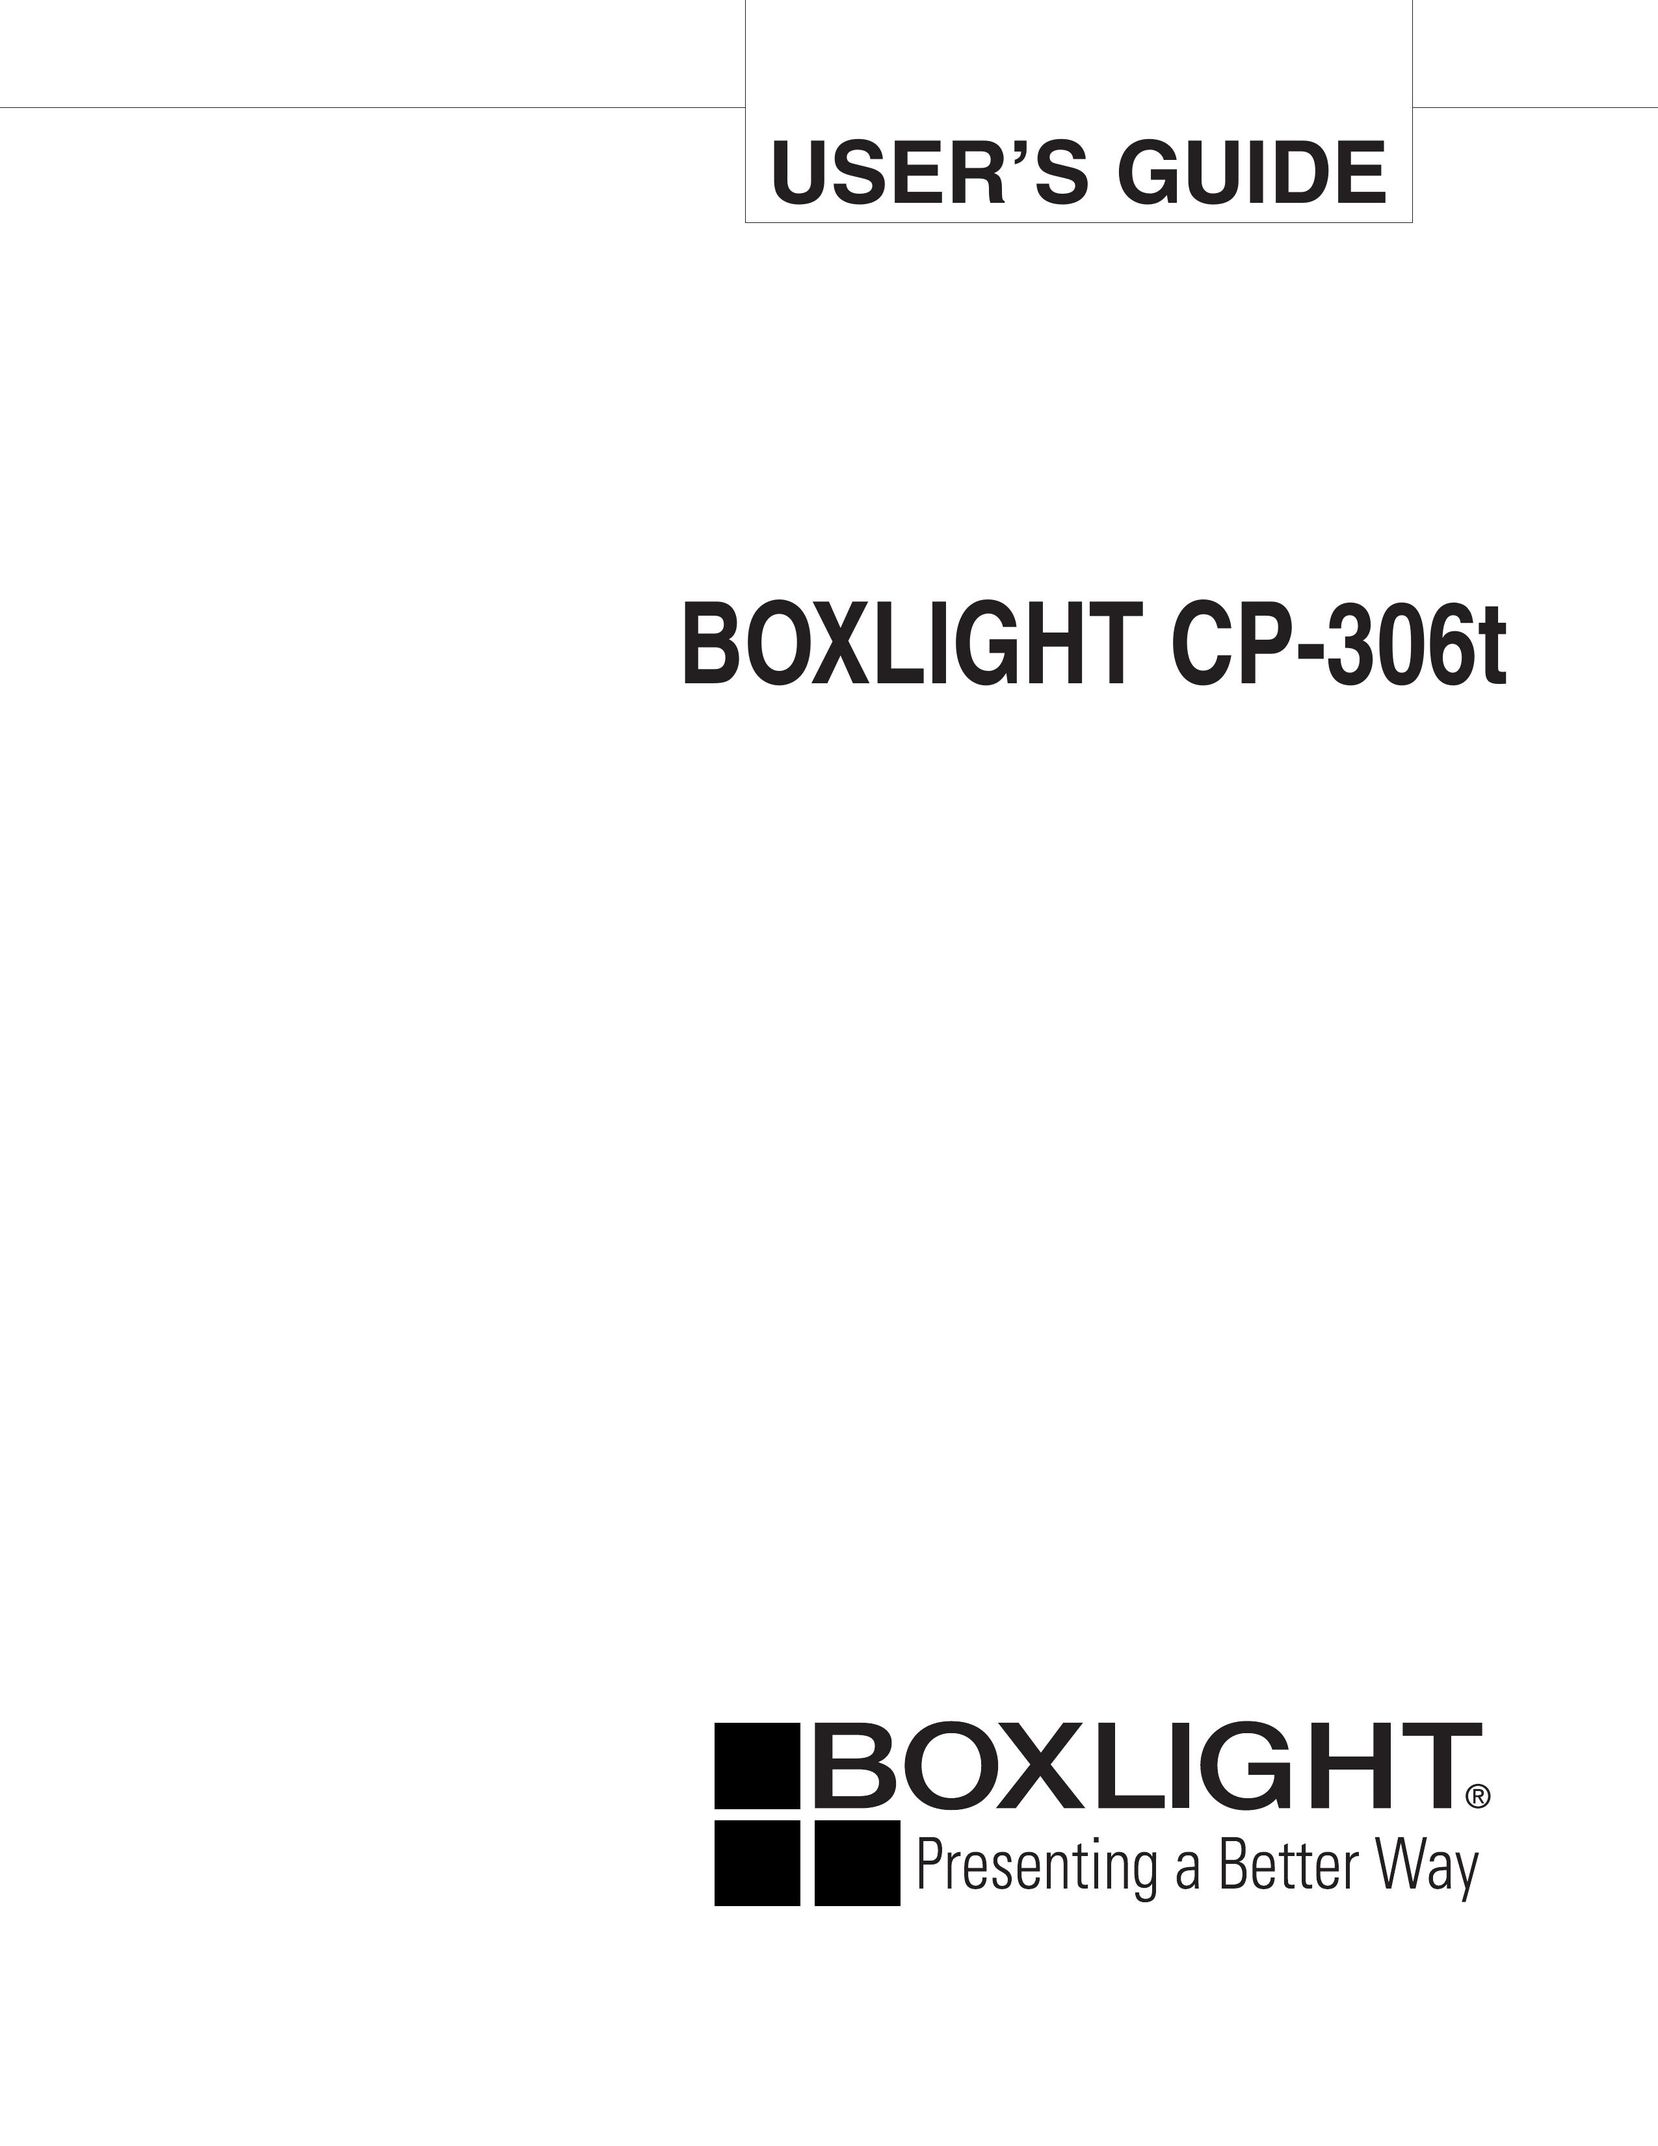 BOXLIGHT CP-306t Projector User Manual